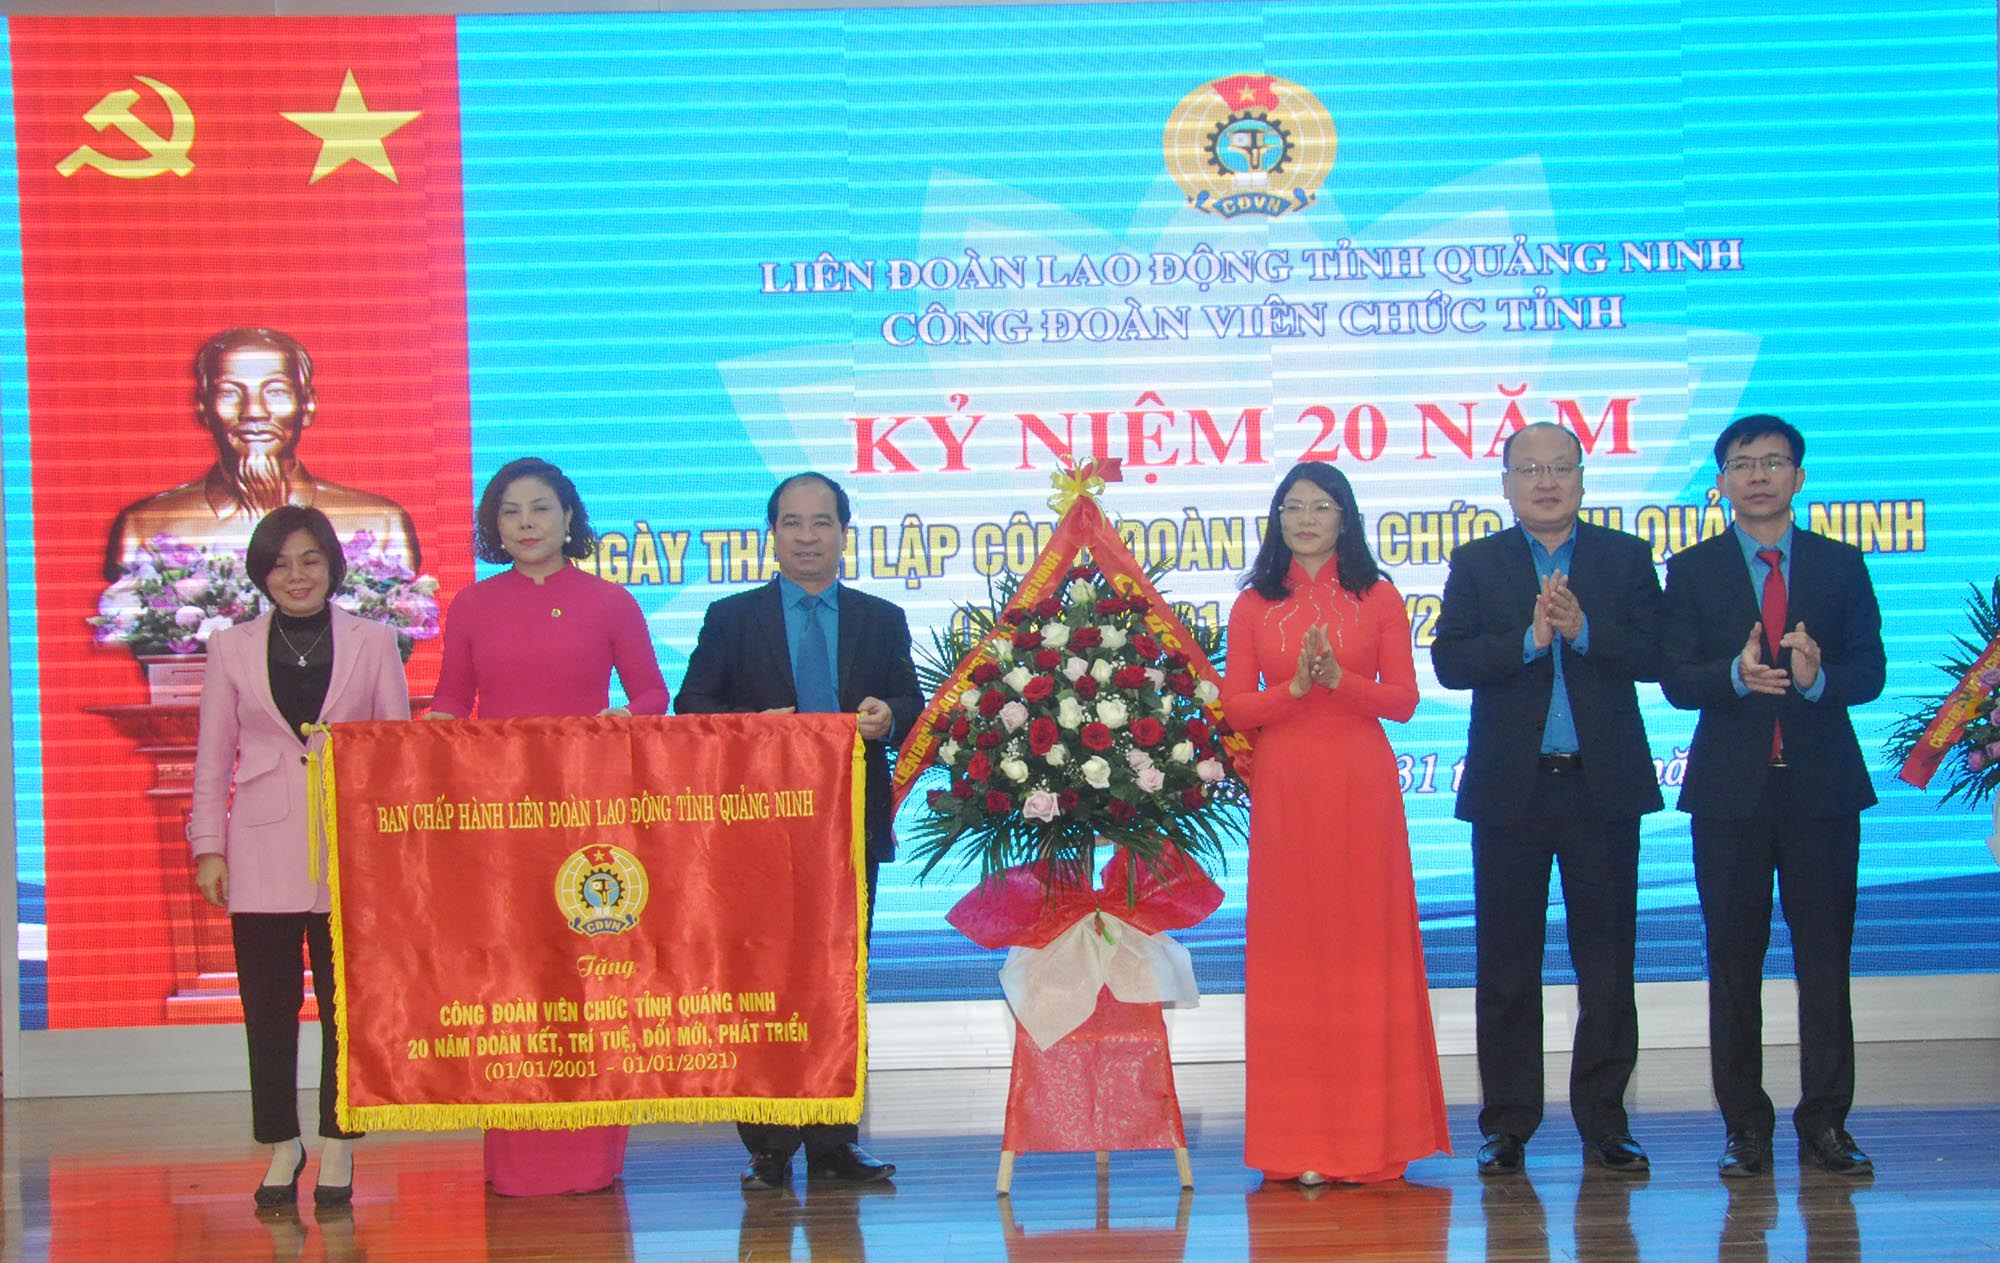 Đồng chí Đỗ Thị Ninh Hường, Chủ tịch LĐLĐ tỉnh Quảng Ninh tặng Công đoàn Viên chức tỉnh bức trướng mang dòng chữ 